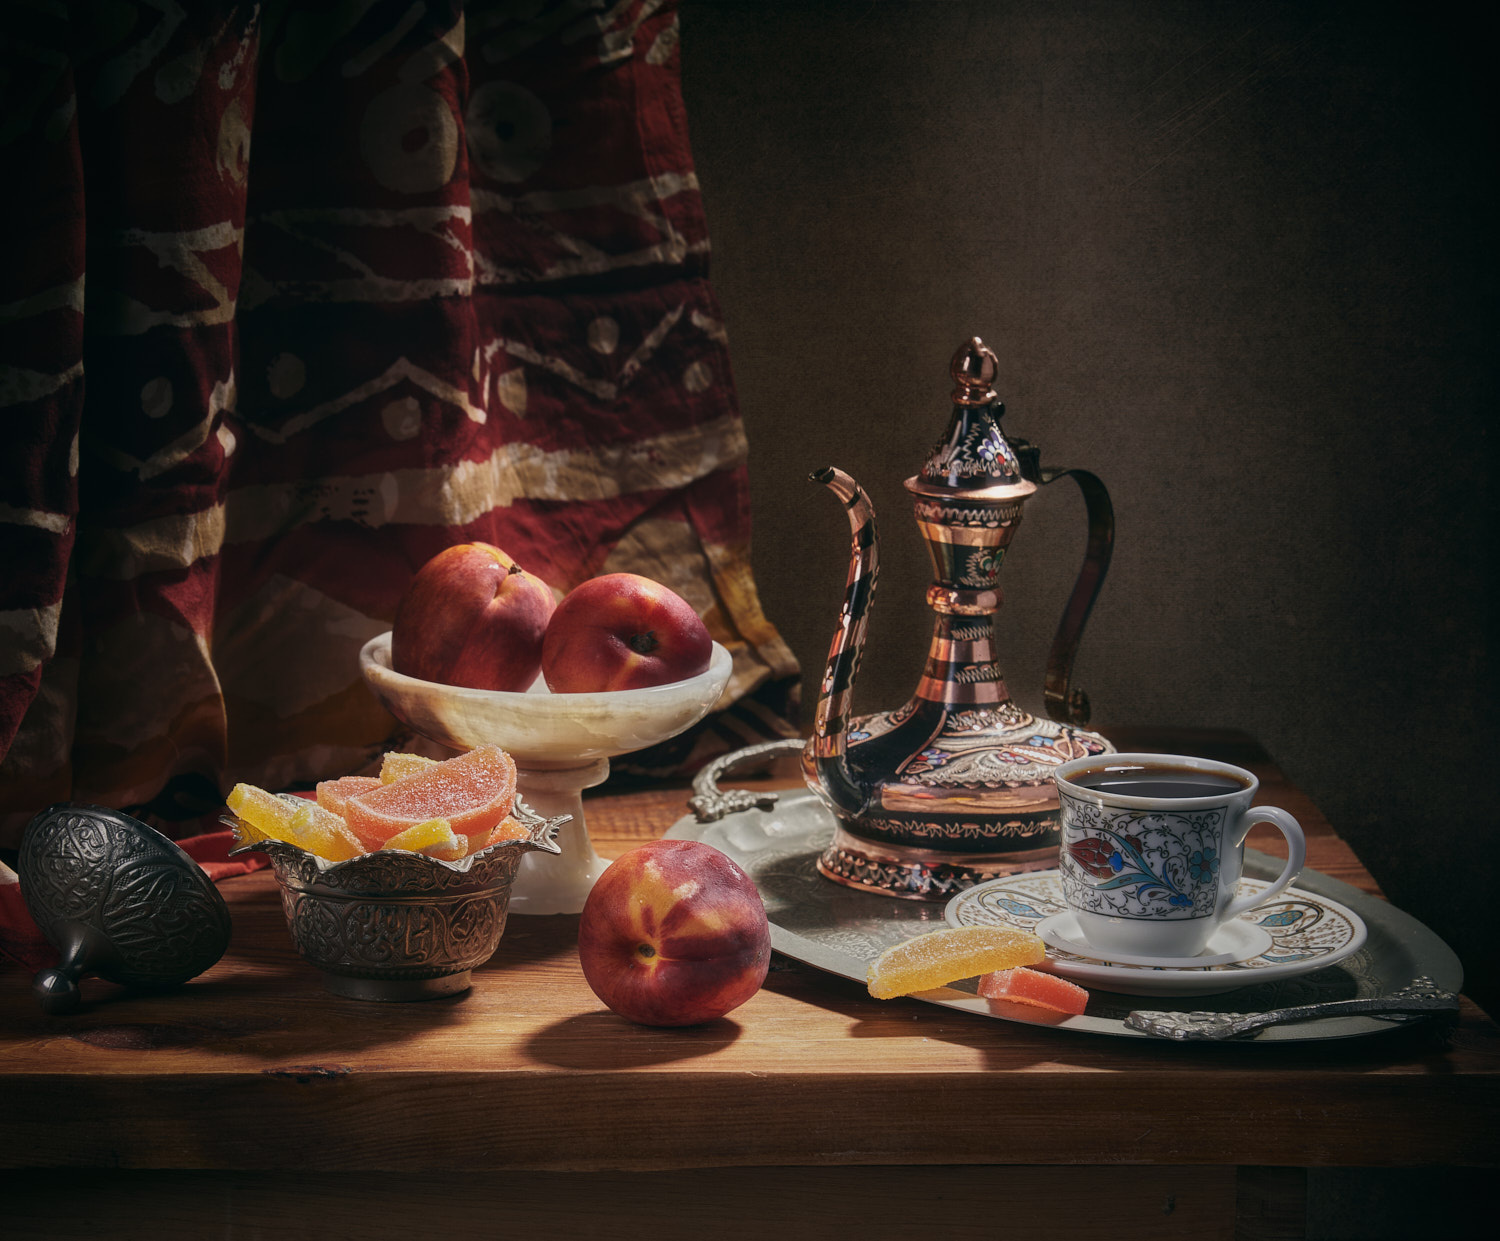 И чашечка кофе натюрморт композиция постановка сцена посуда предметы сладости кофе